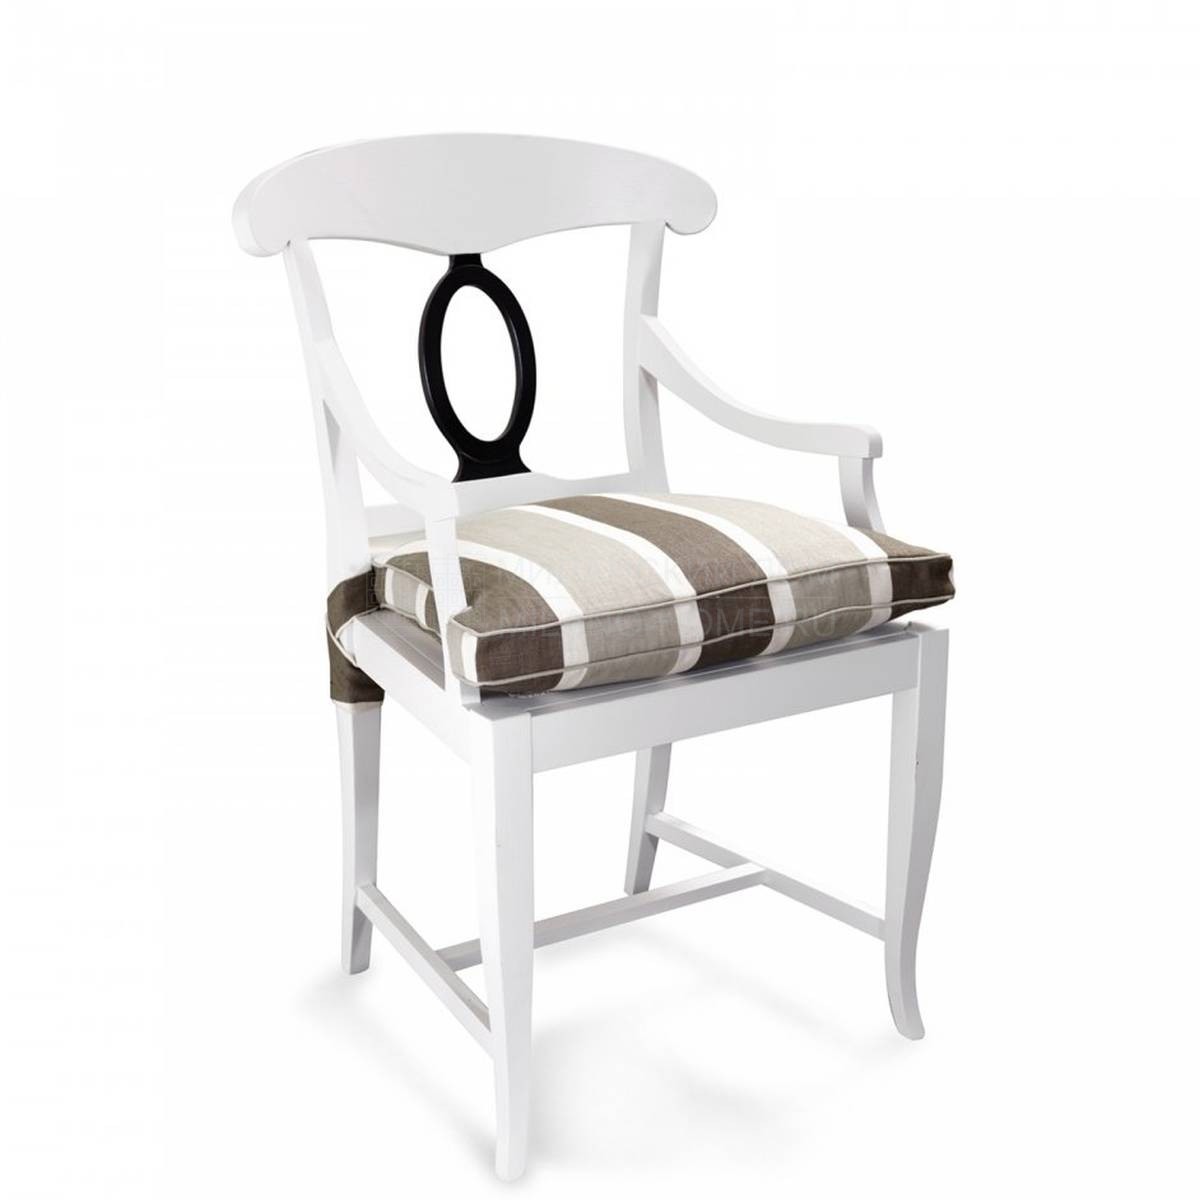 Полукресло Wien chair with cushion из Италии фабрики MARIONI